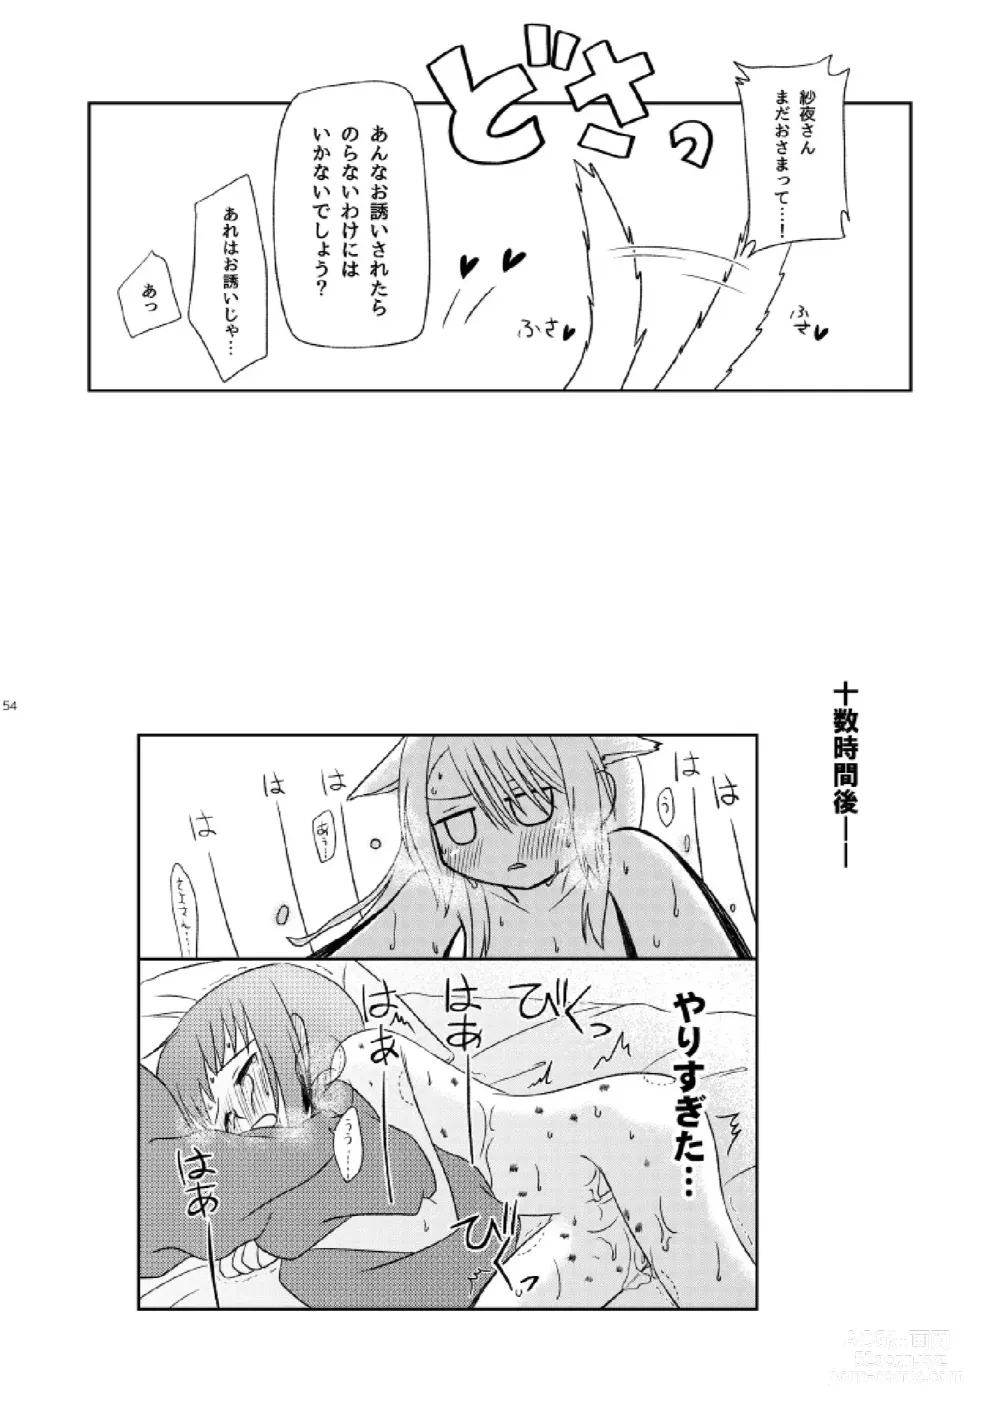 Page 56 of doujinshi Watashi Dake no